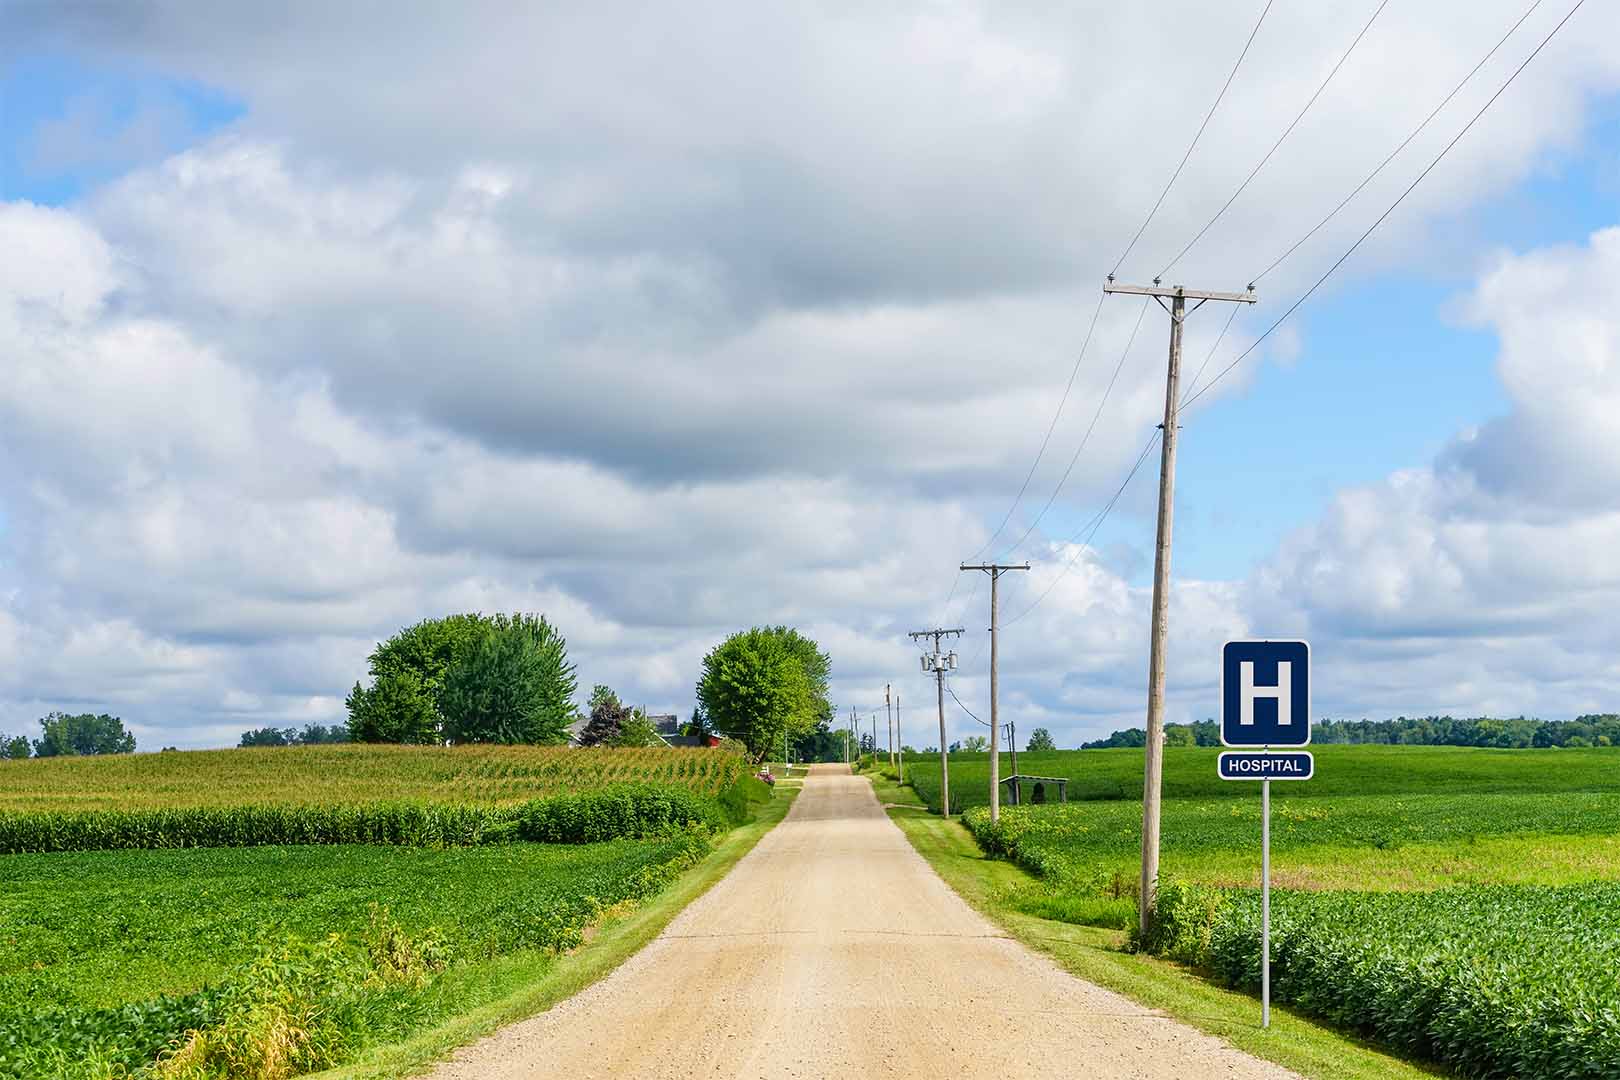 我mage of a country road with road sign saying 